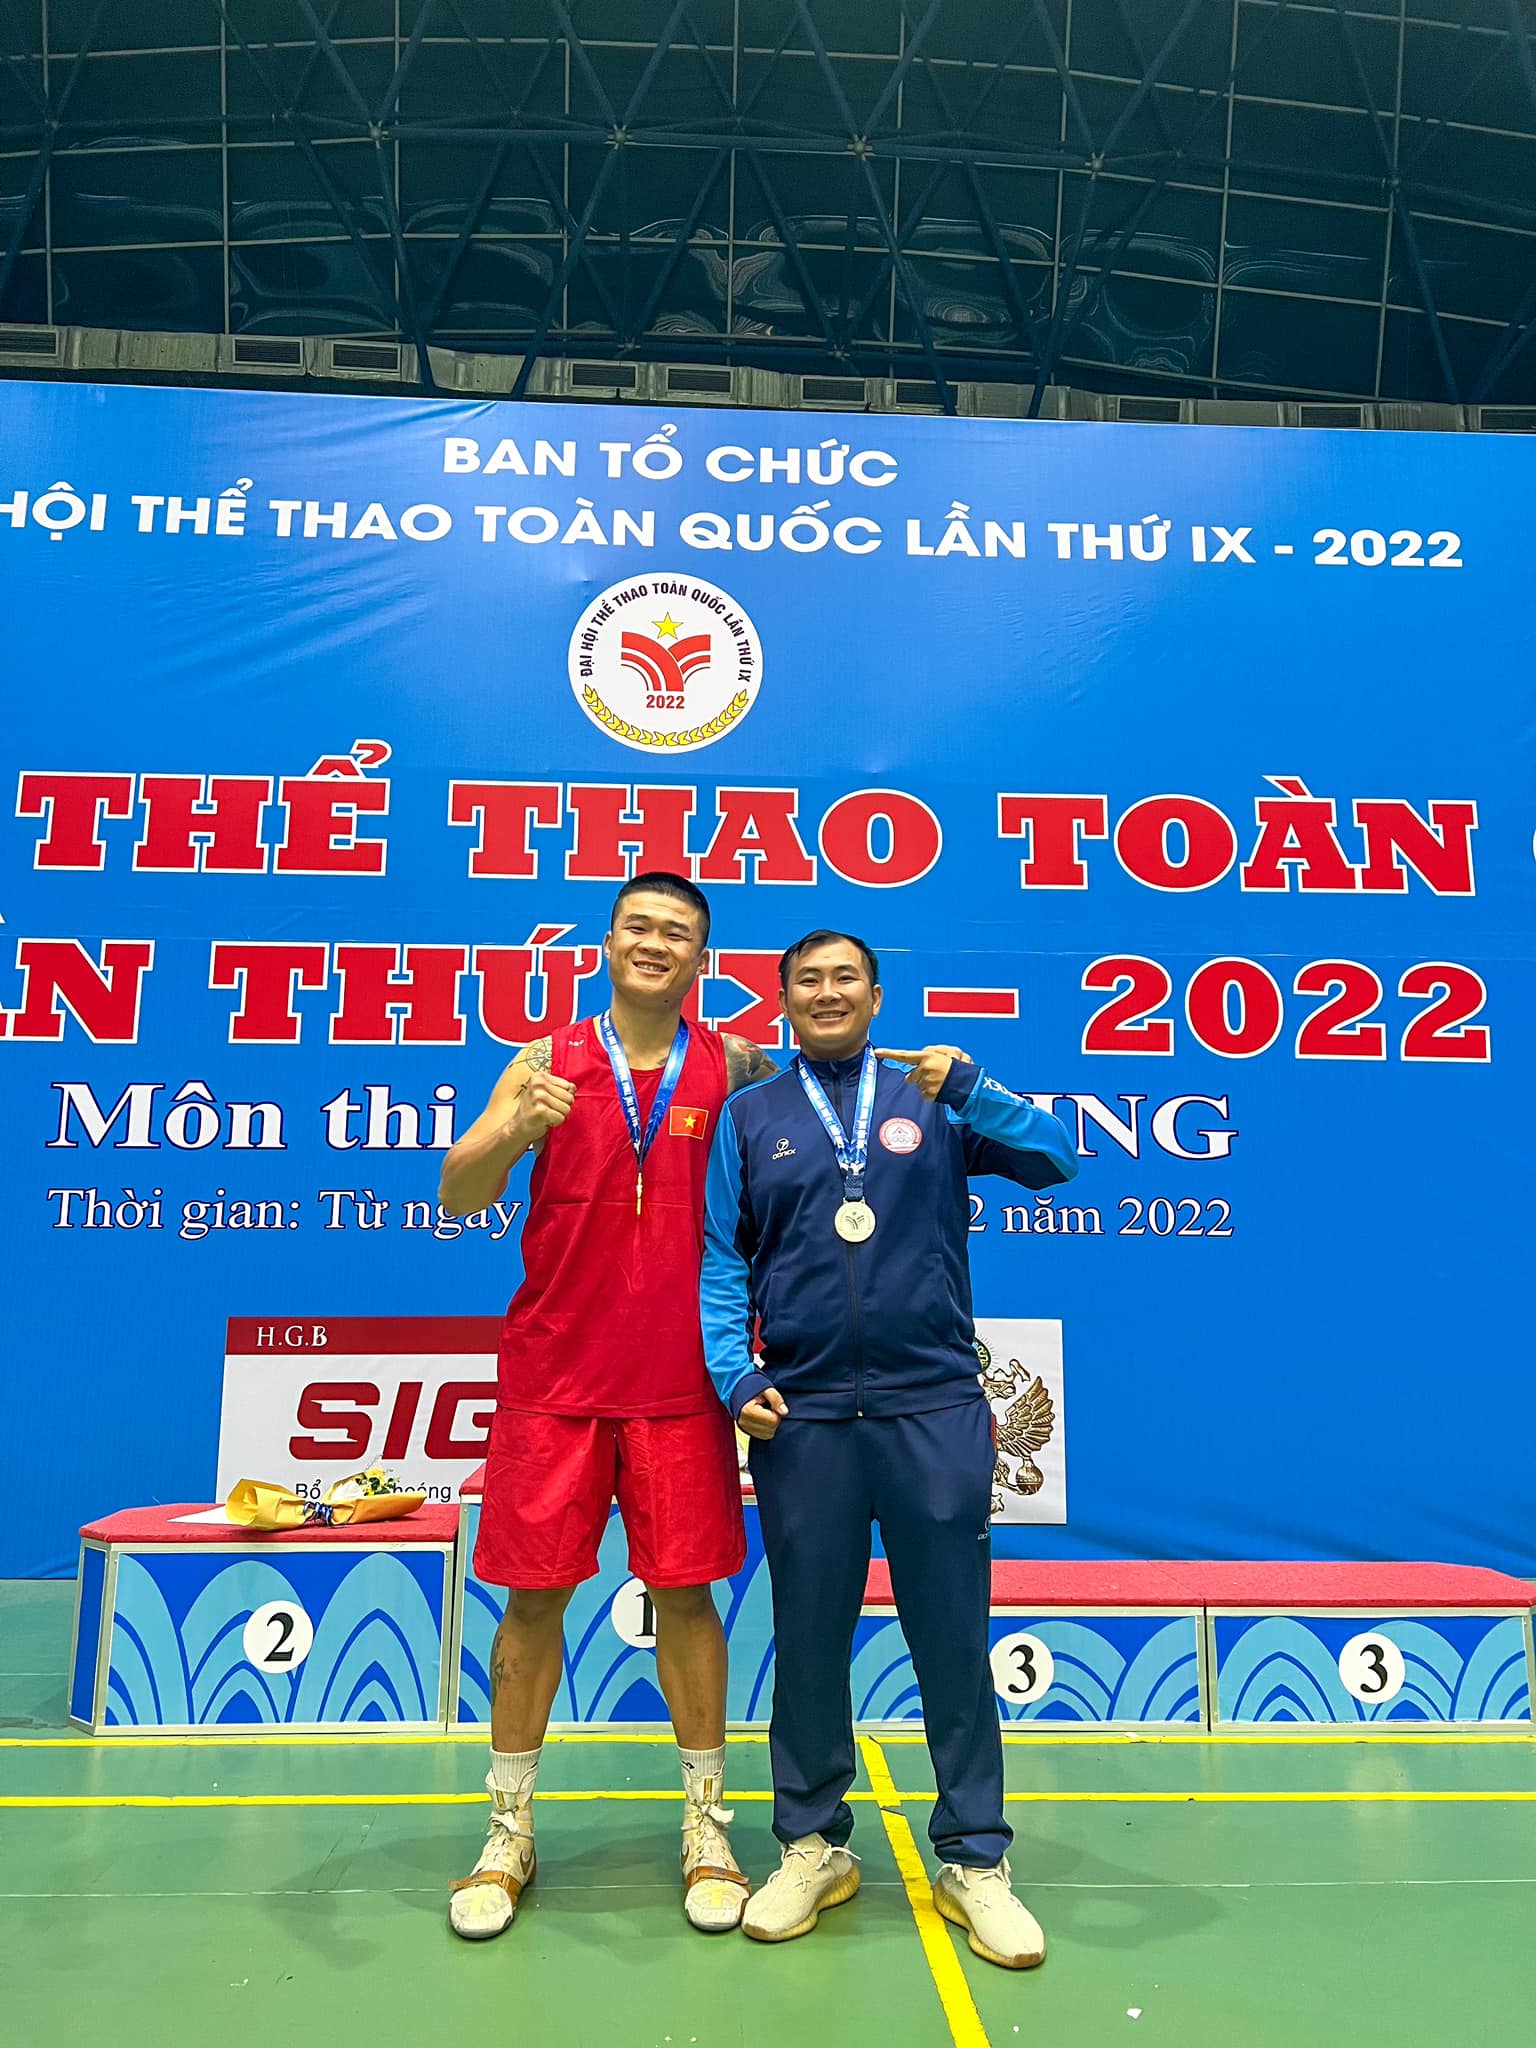 Trương Đình Hoàng dừng thi đấu ở các giải quốc gia sau tấm HCV tại Đại hội thể thao toàn quốc - Ảnh 1.